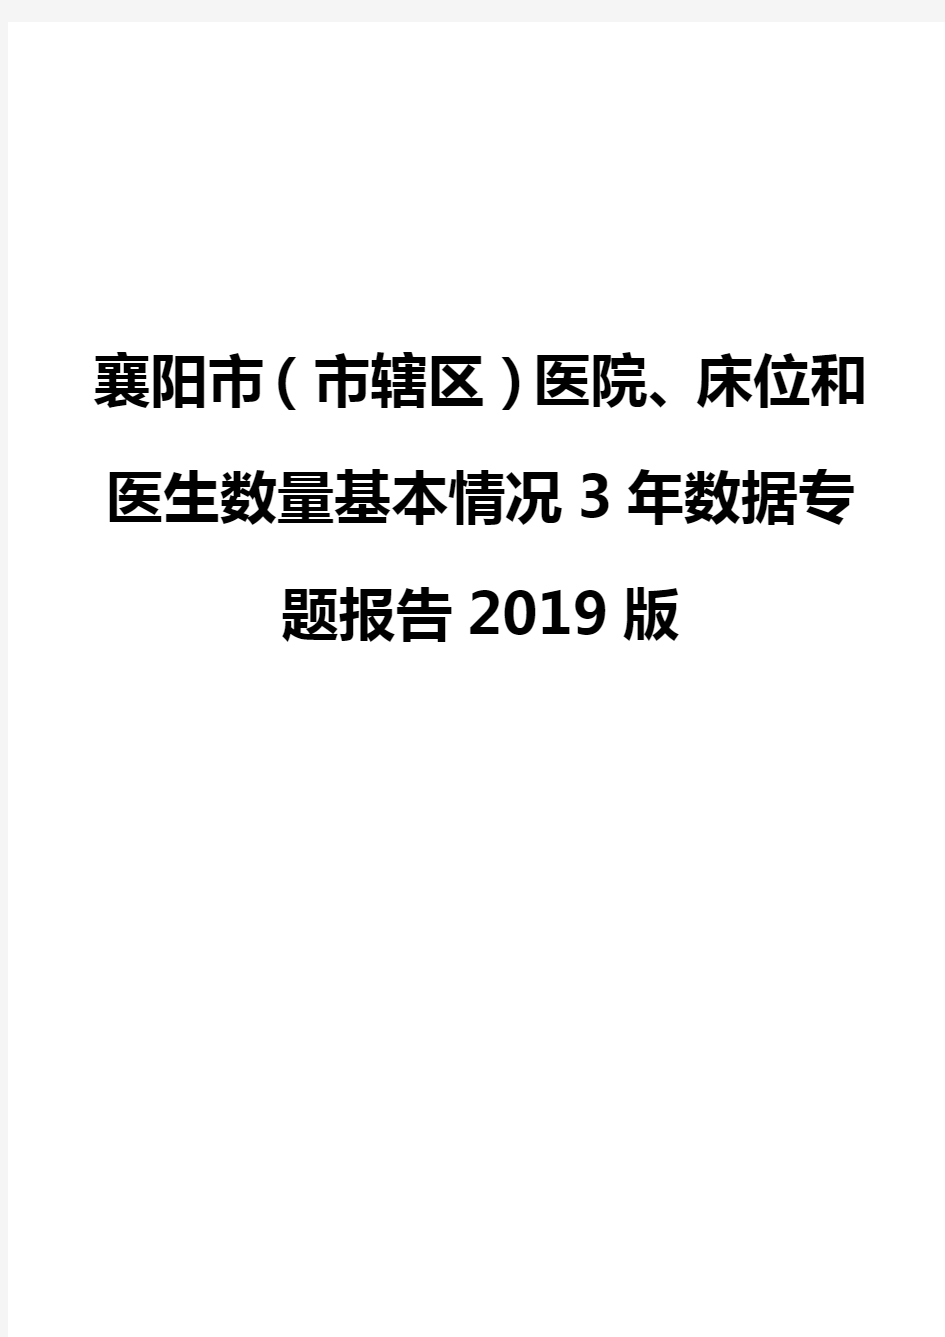 襄阳市(市辖区)医院、床位和医生数量基本情况3年数据专题报告2019版